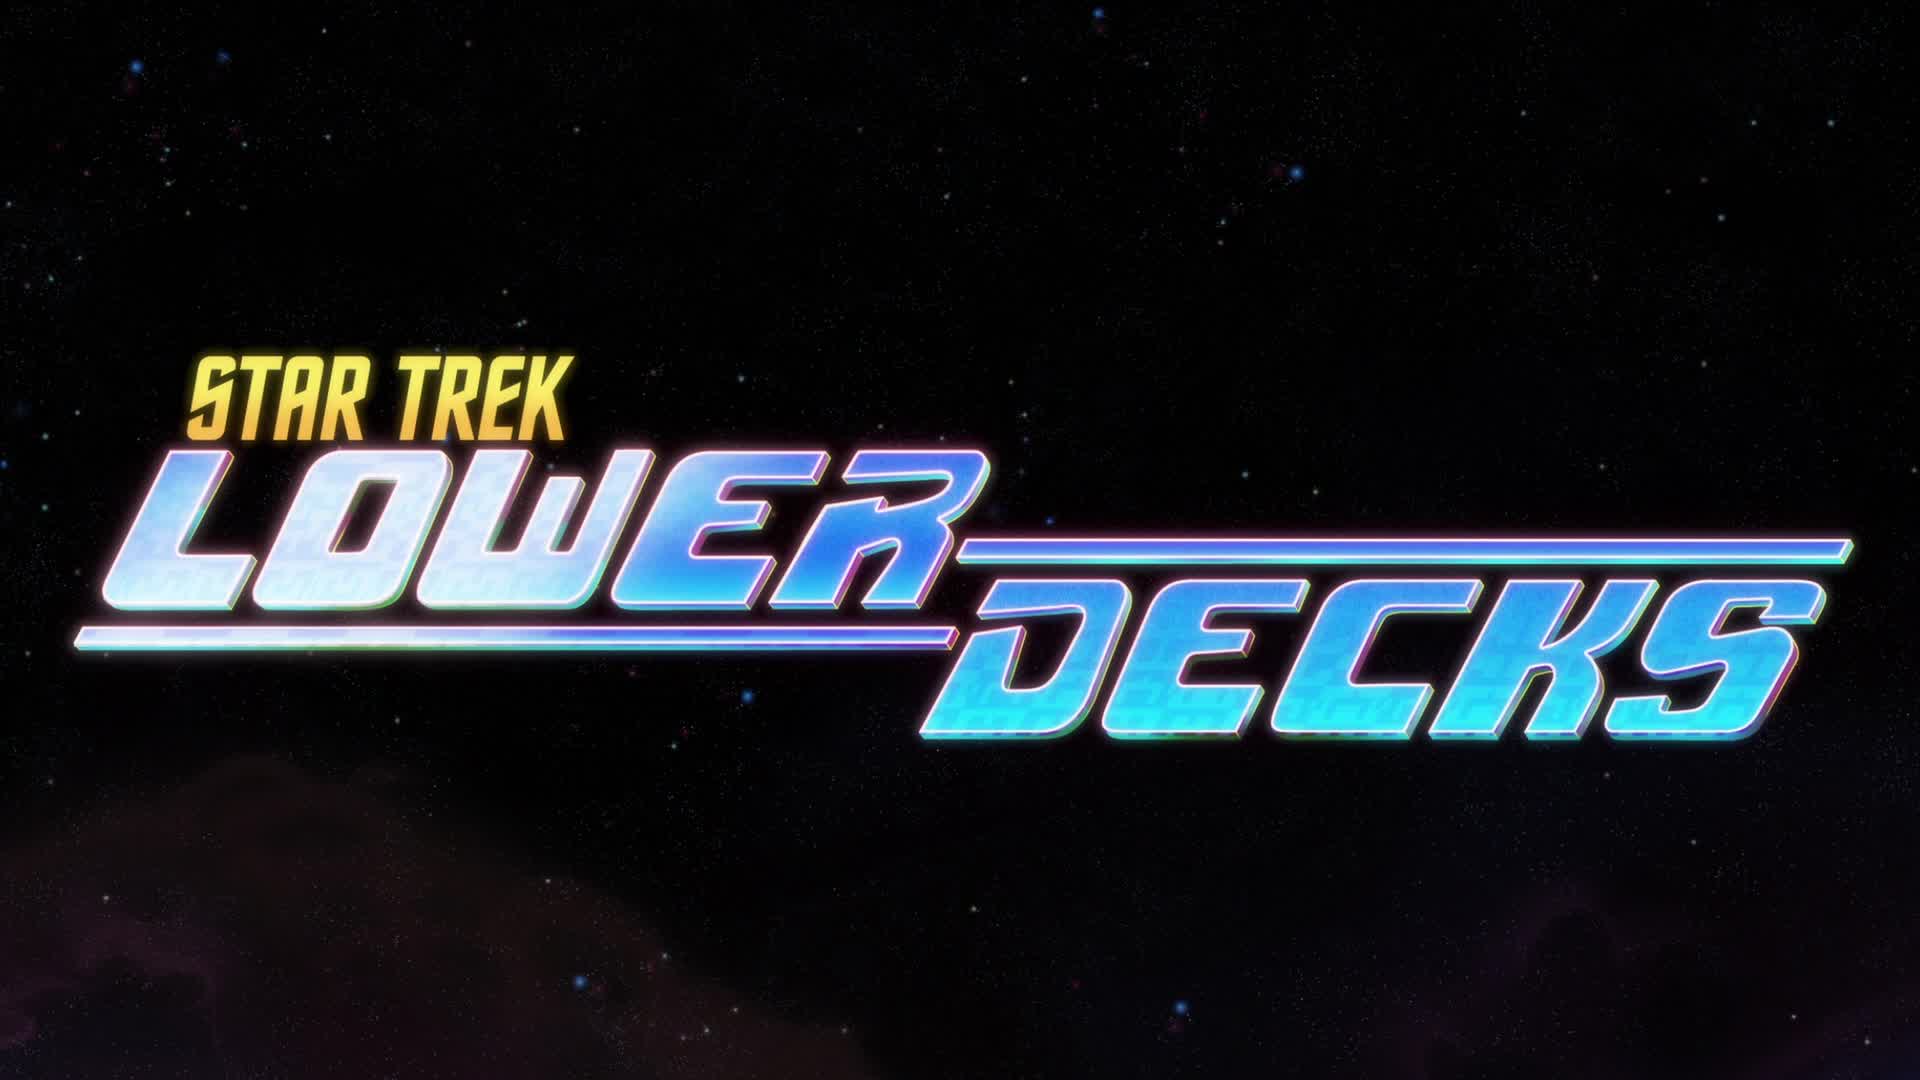 Star Trek Lower Decks S03E09 Trusted Sources 1080p DTS HD MA 5 1 AVC REMUX FraMeSToR TGx